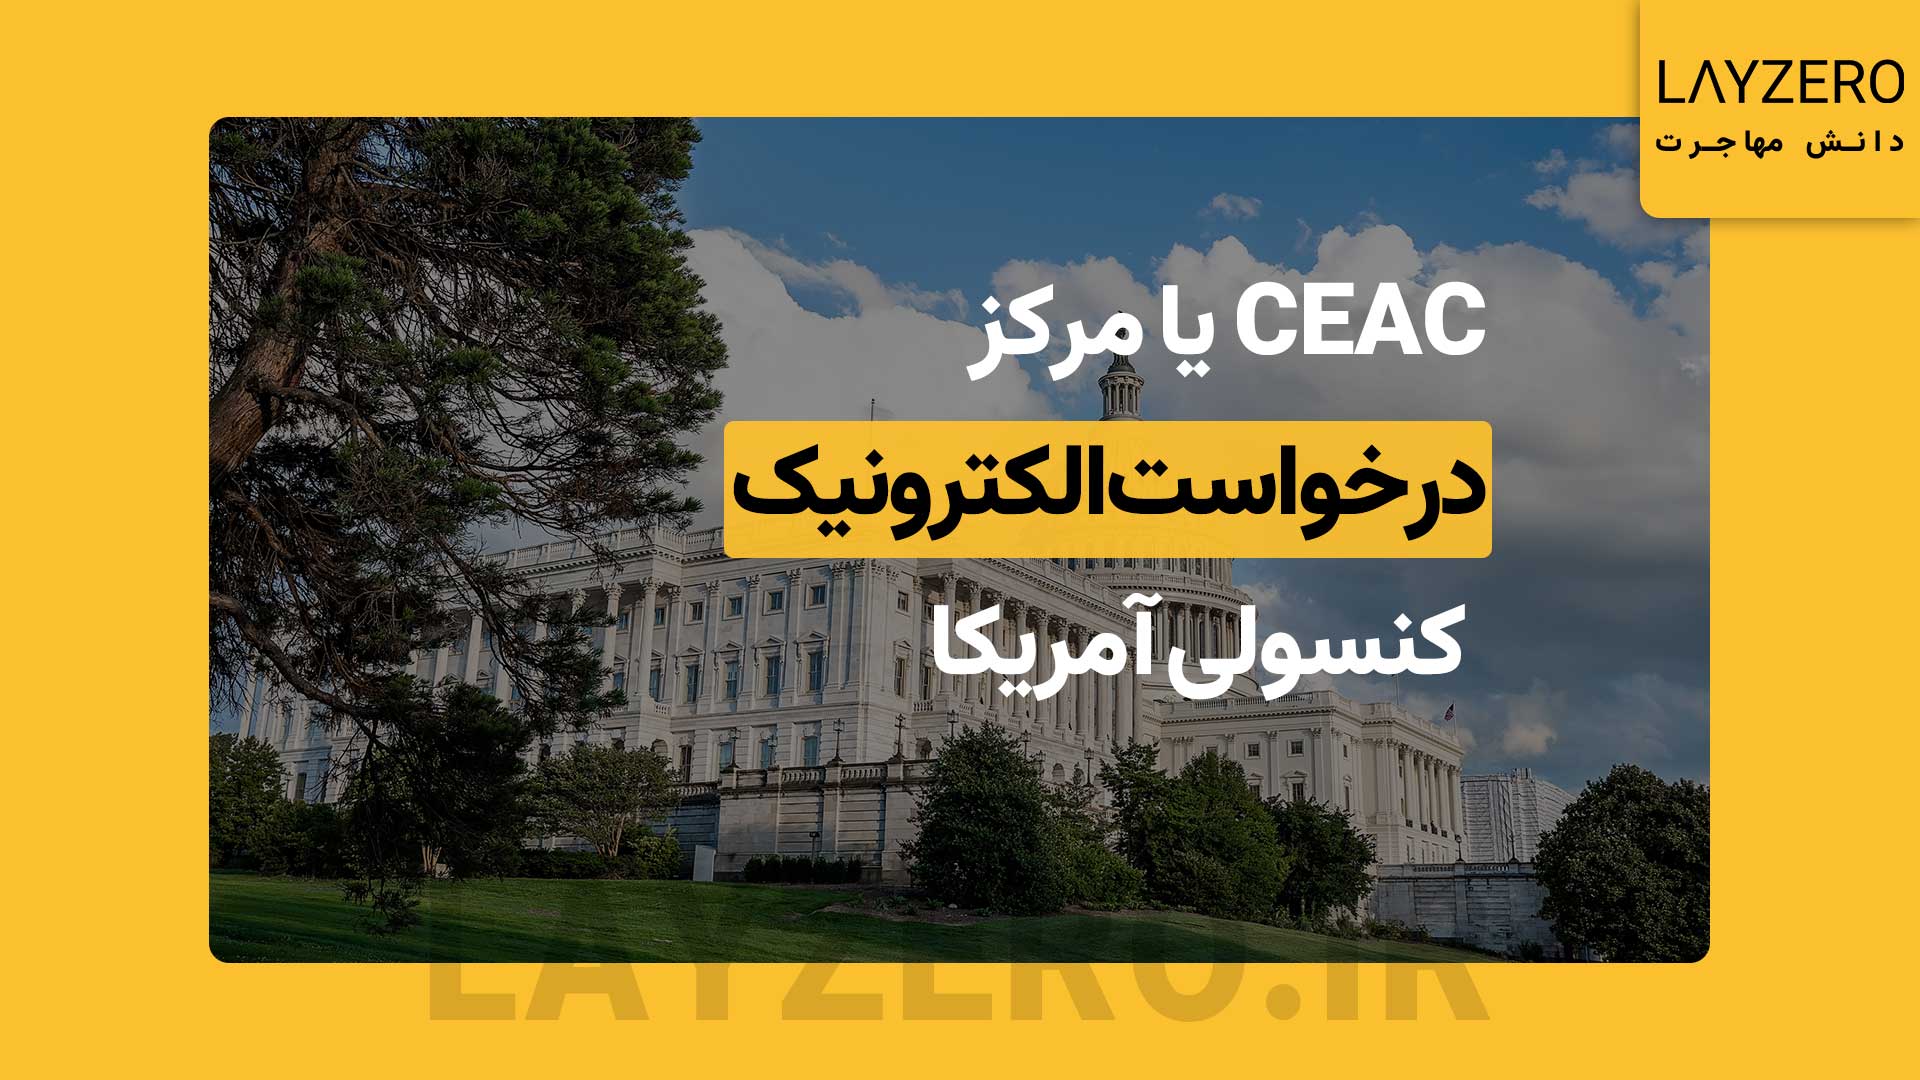 مرکز درخواست الکترونیک کنسولی آمریکا (CEAC): چیستی و وظایف | لایزرو CEAC خلاصه شده سرکلمه Consular Electronic Application Center است، CEAC مرکز درخواست الکترونیک کنسولی آمریکا ایالات متحده است.